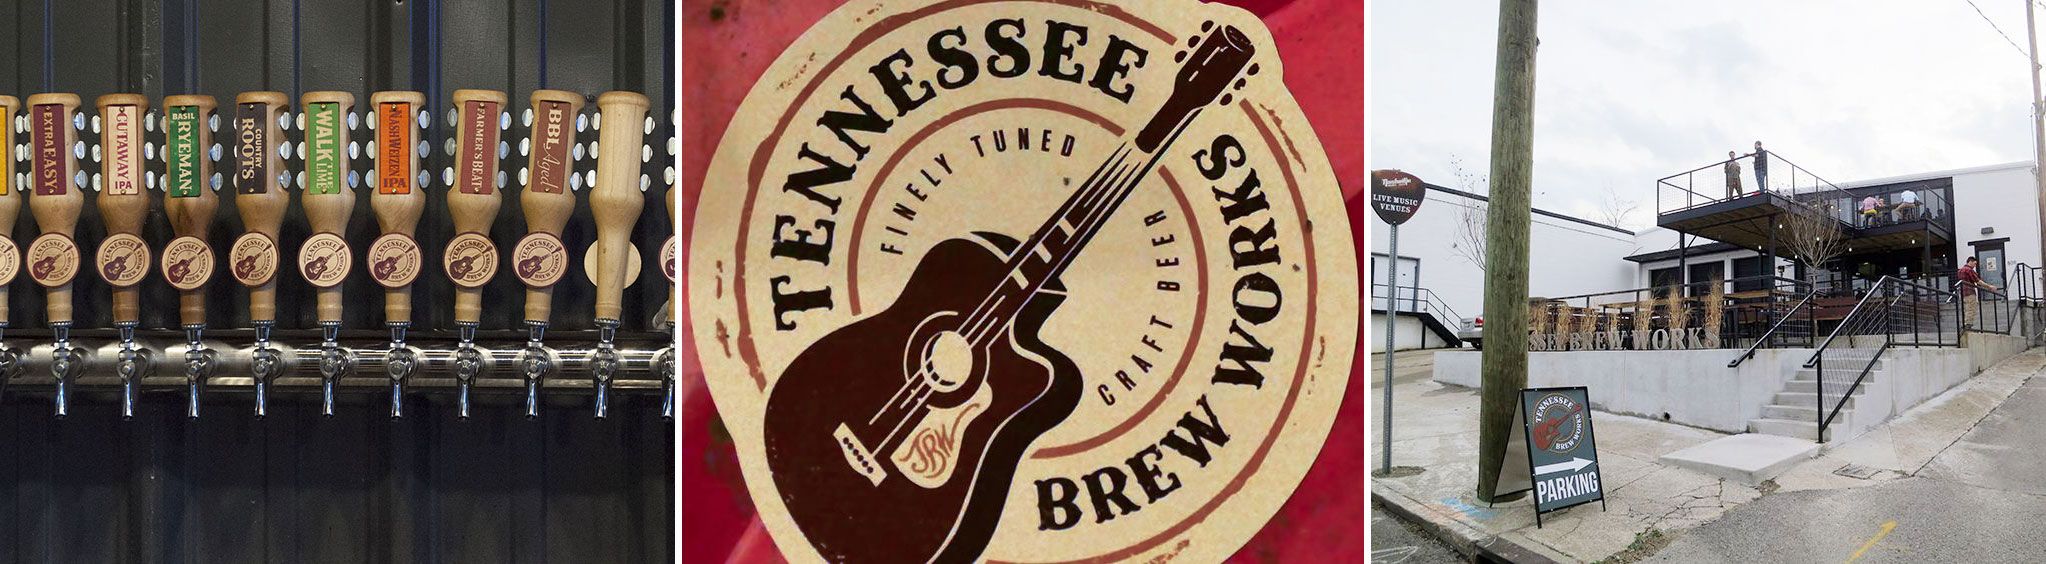 Tennessee Brew Works in Nashville, TN